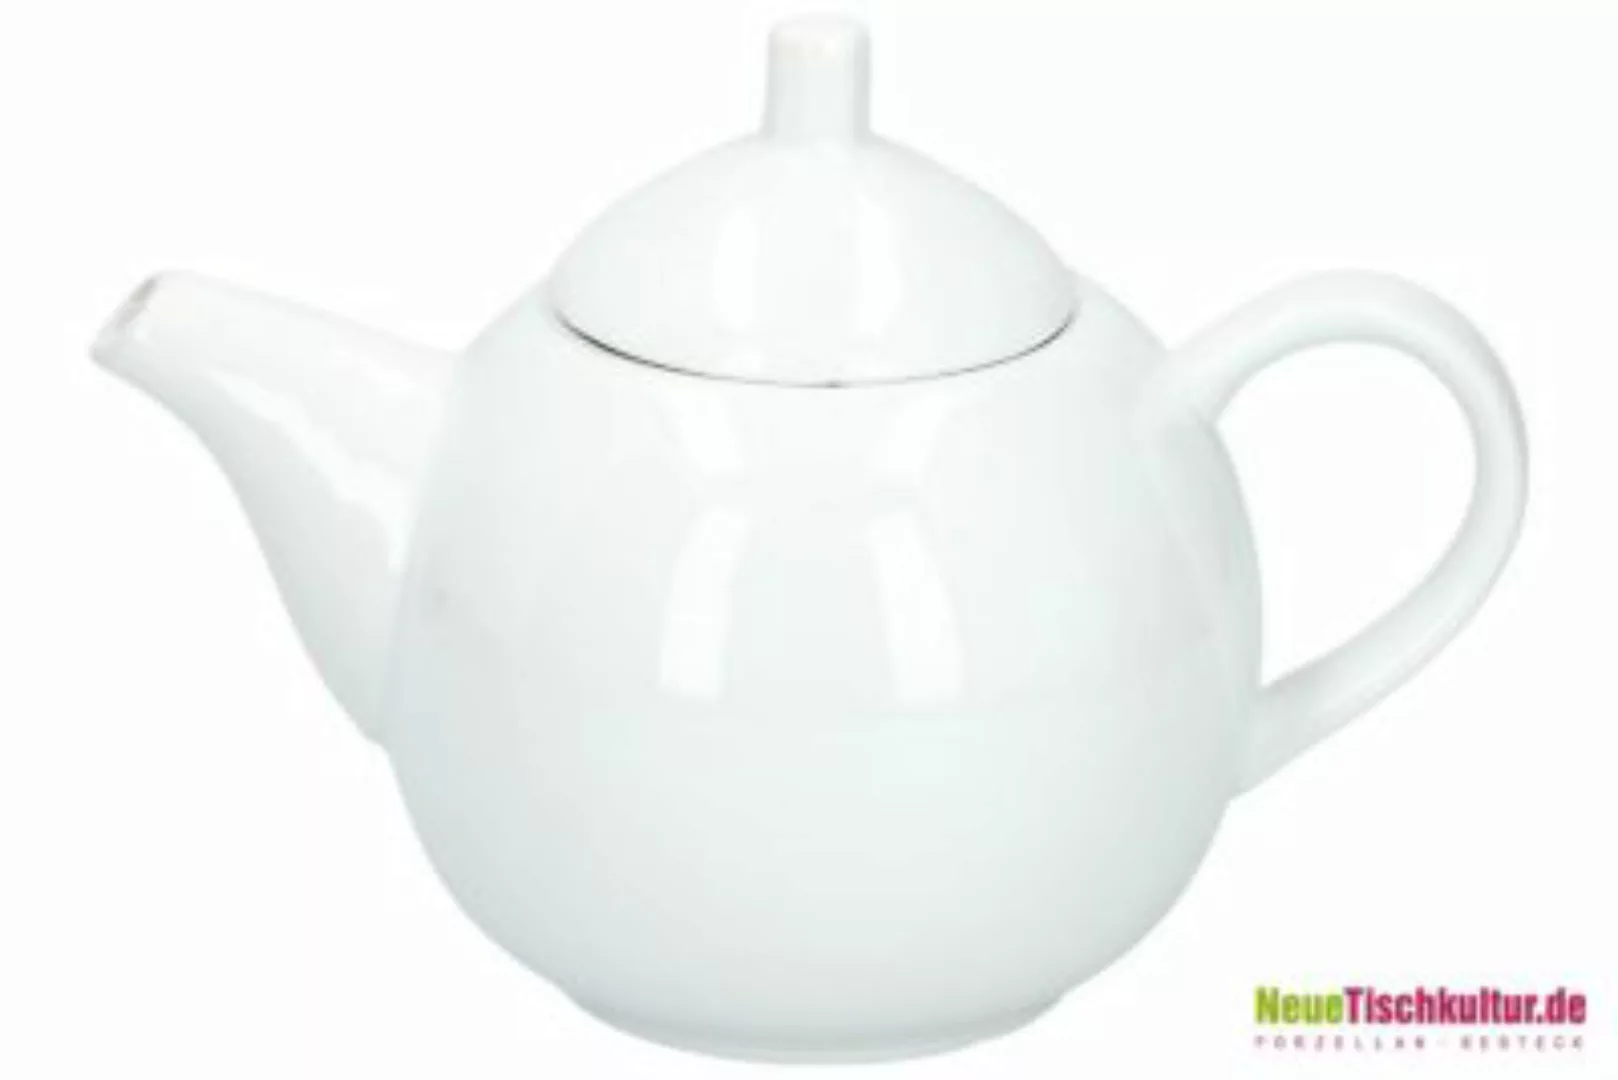 Neuetischkultur Teekanne Keramik Weiß weiß günstig online kaufen